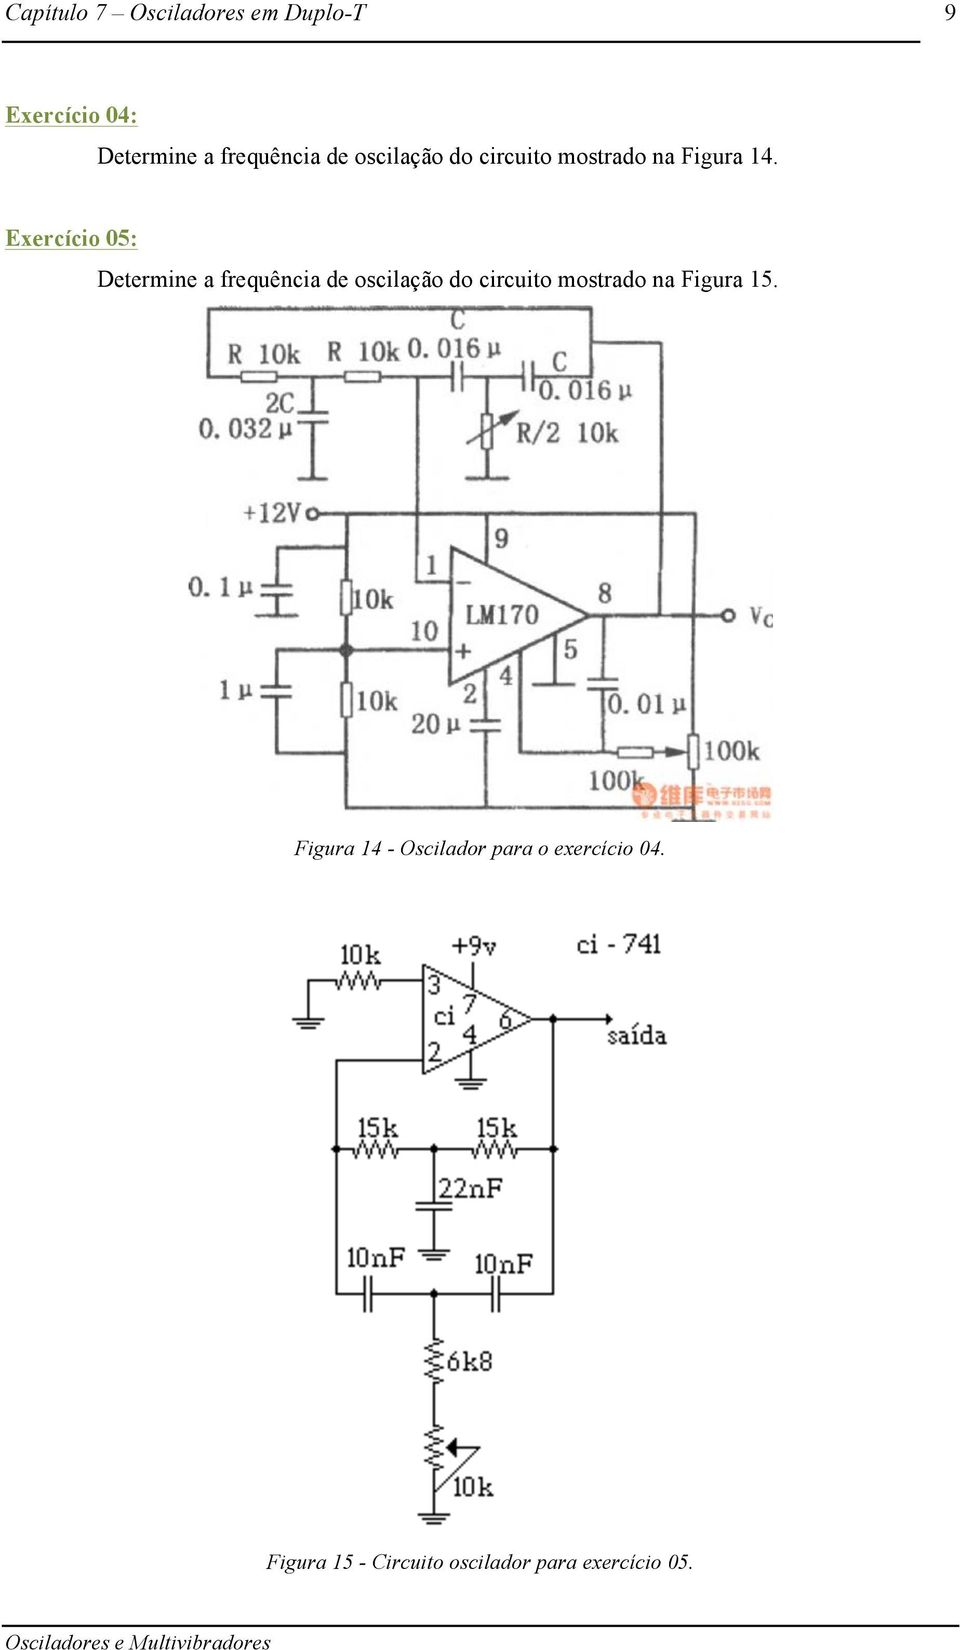 Exercício 05: Determine a frequência de oscilação do circuito